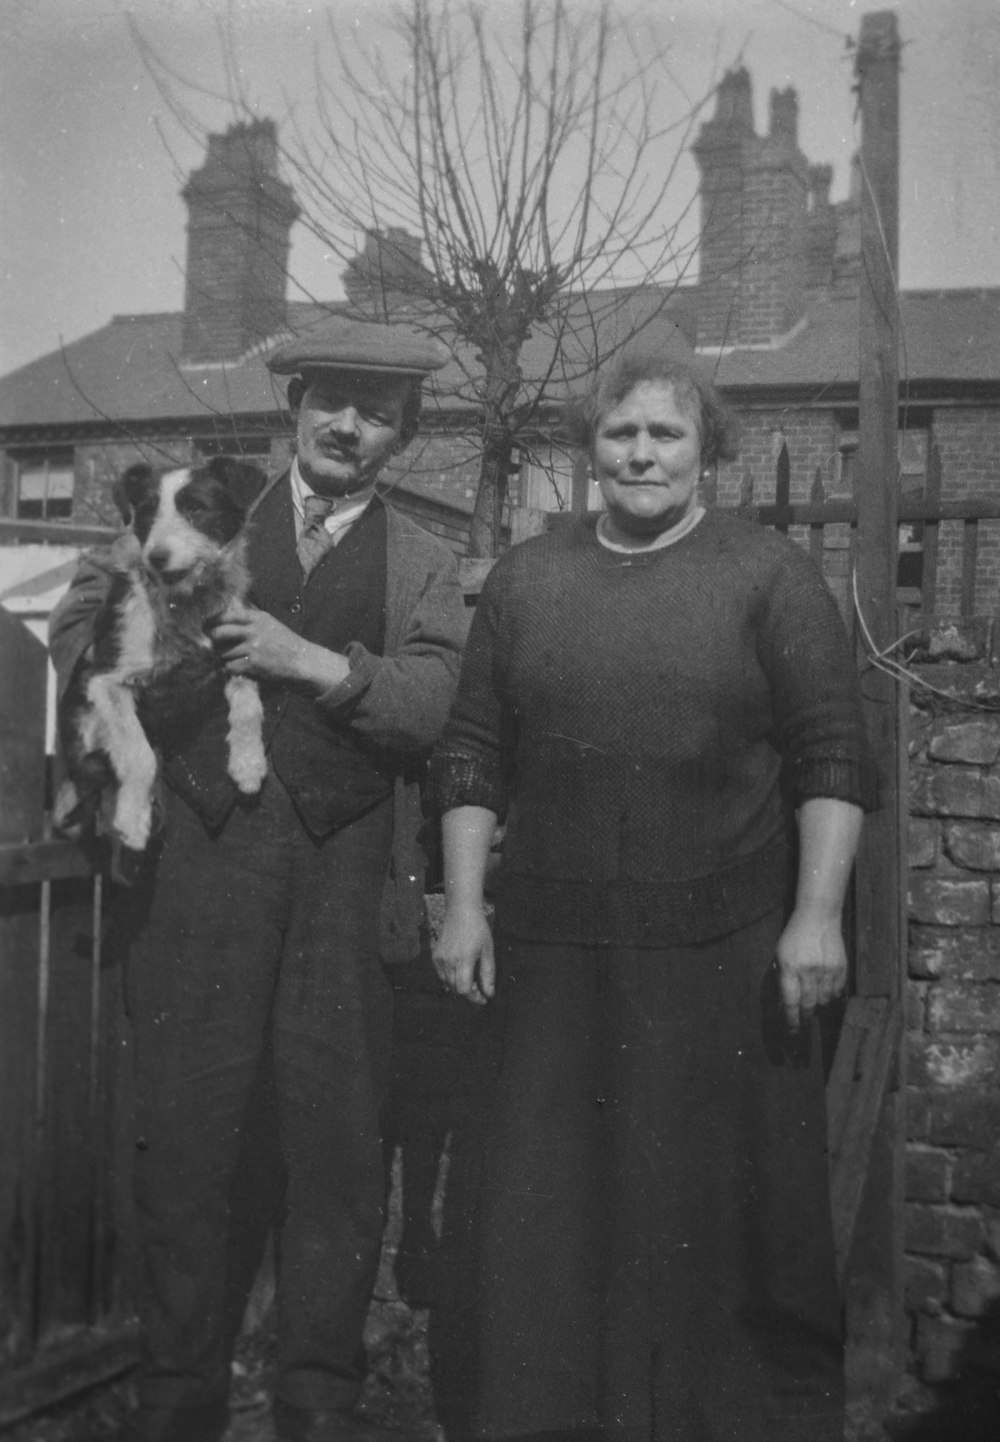 Una vieja foto en blanco y negro de un hombre y una mujer sosteniendo un perro